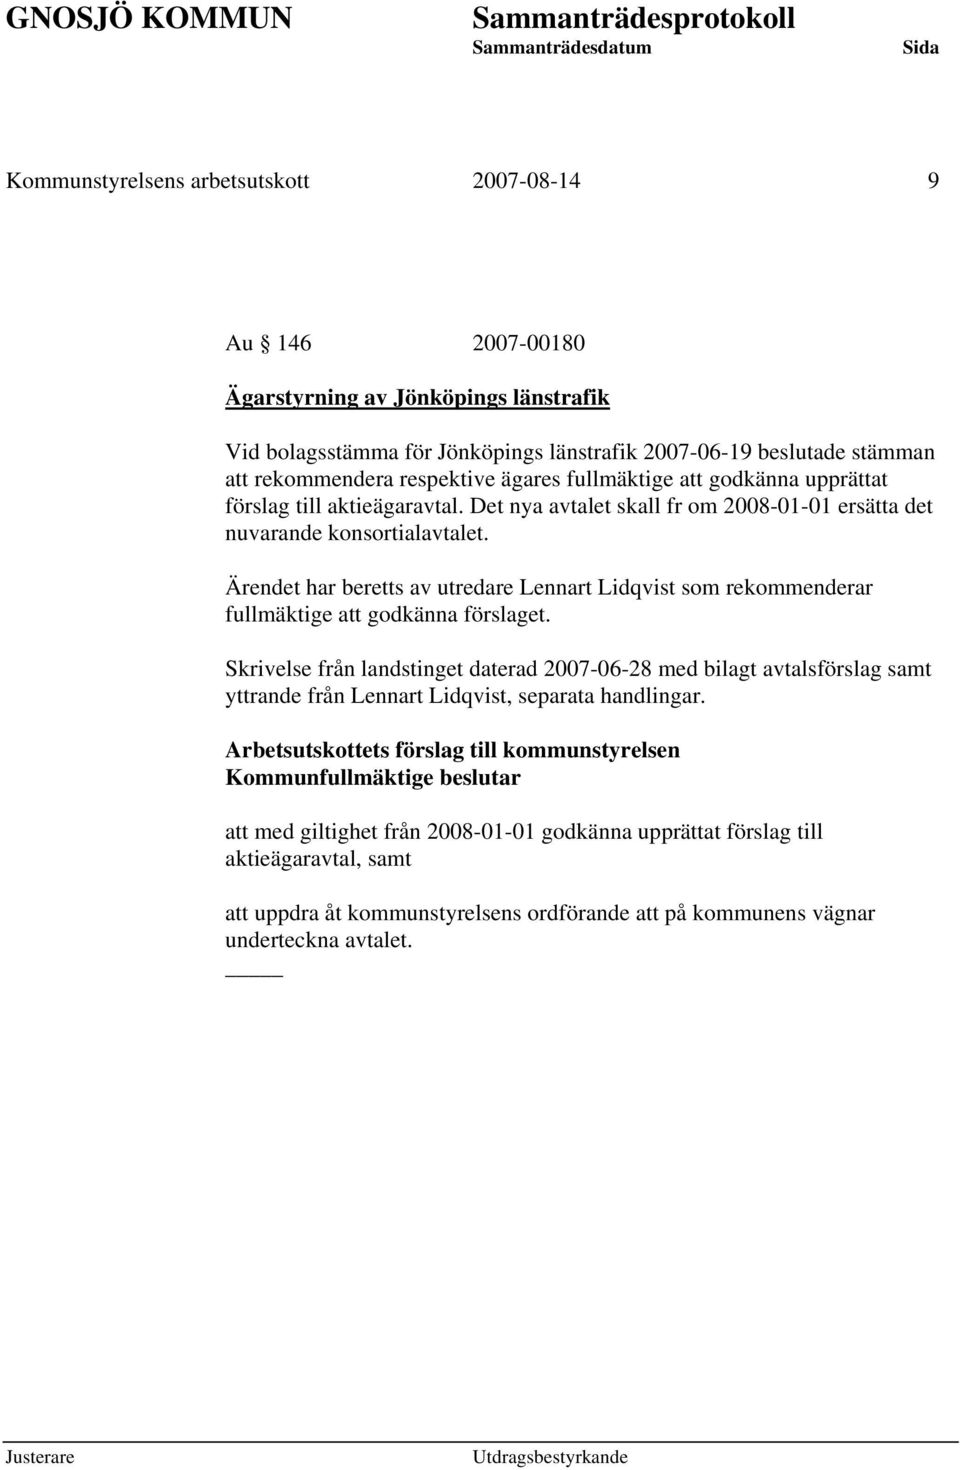 Ärendet har beretts av utredare Lennart Lidqvist som rekommenderar fullmäktige att godkänna förslaget.